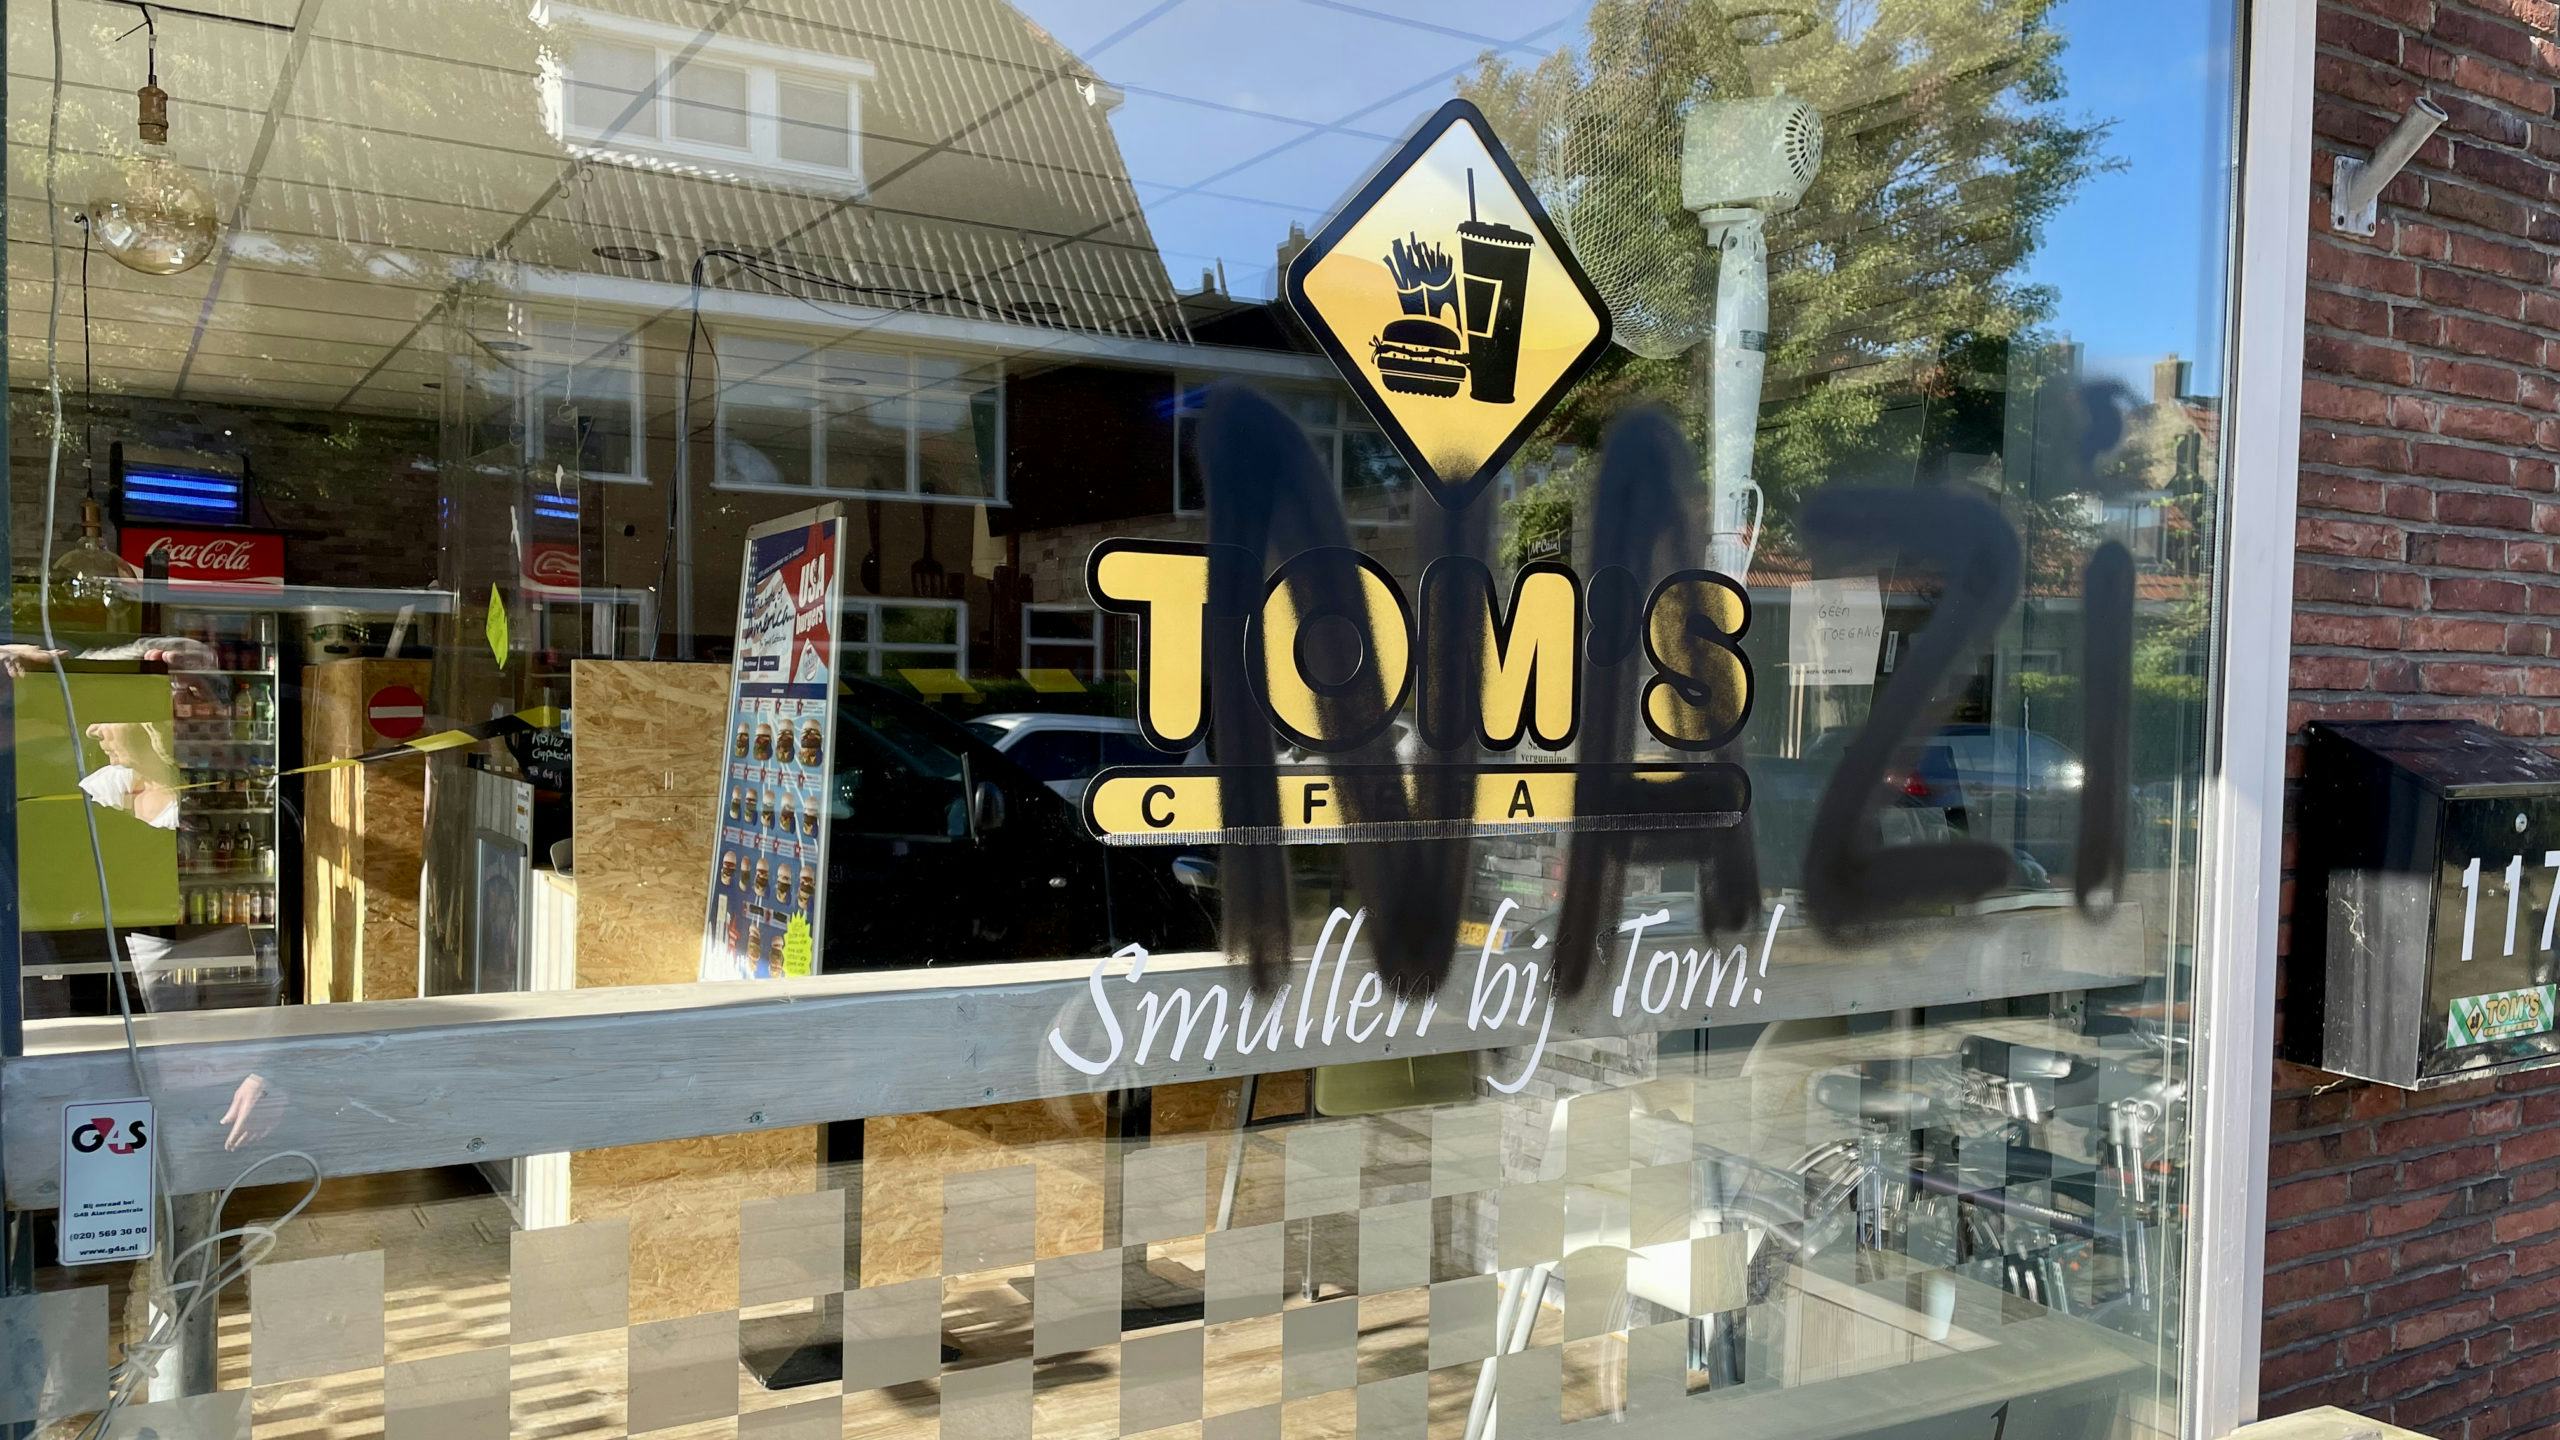 Tom's Cafetaria in Leeuwarden beklad: 'Aanleiding is verplichte QR-scan'